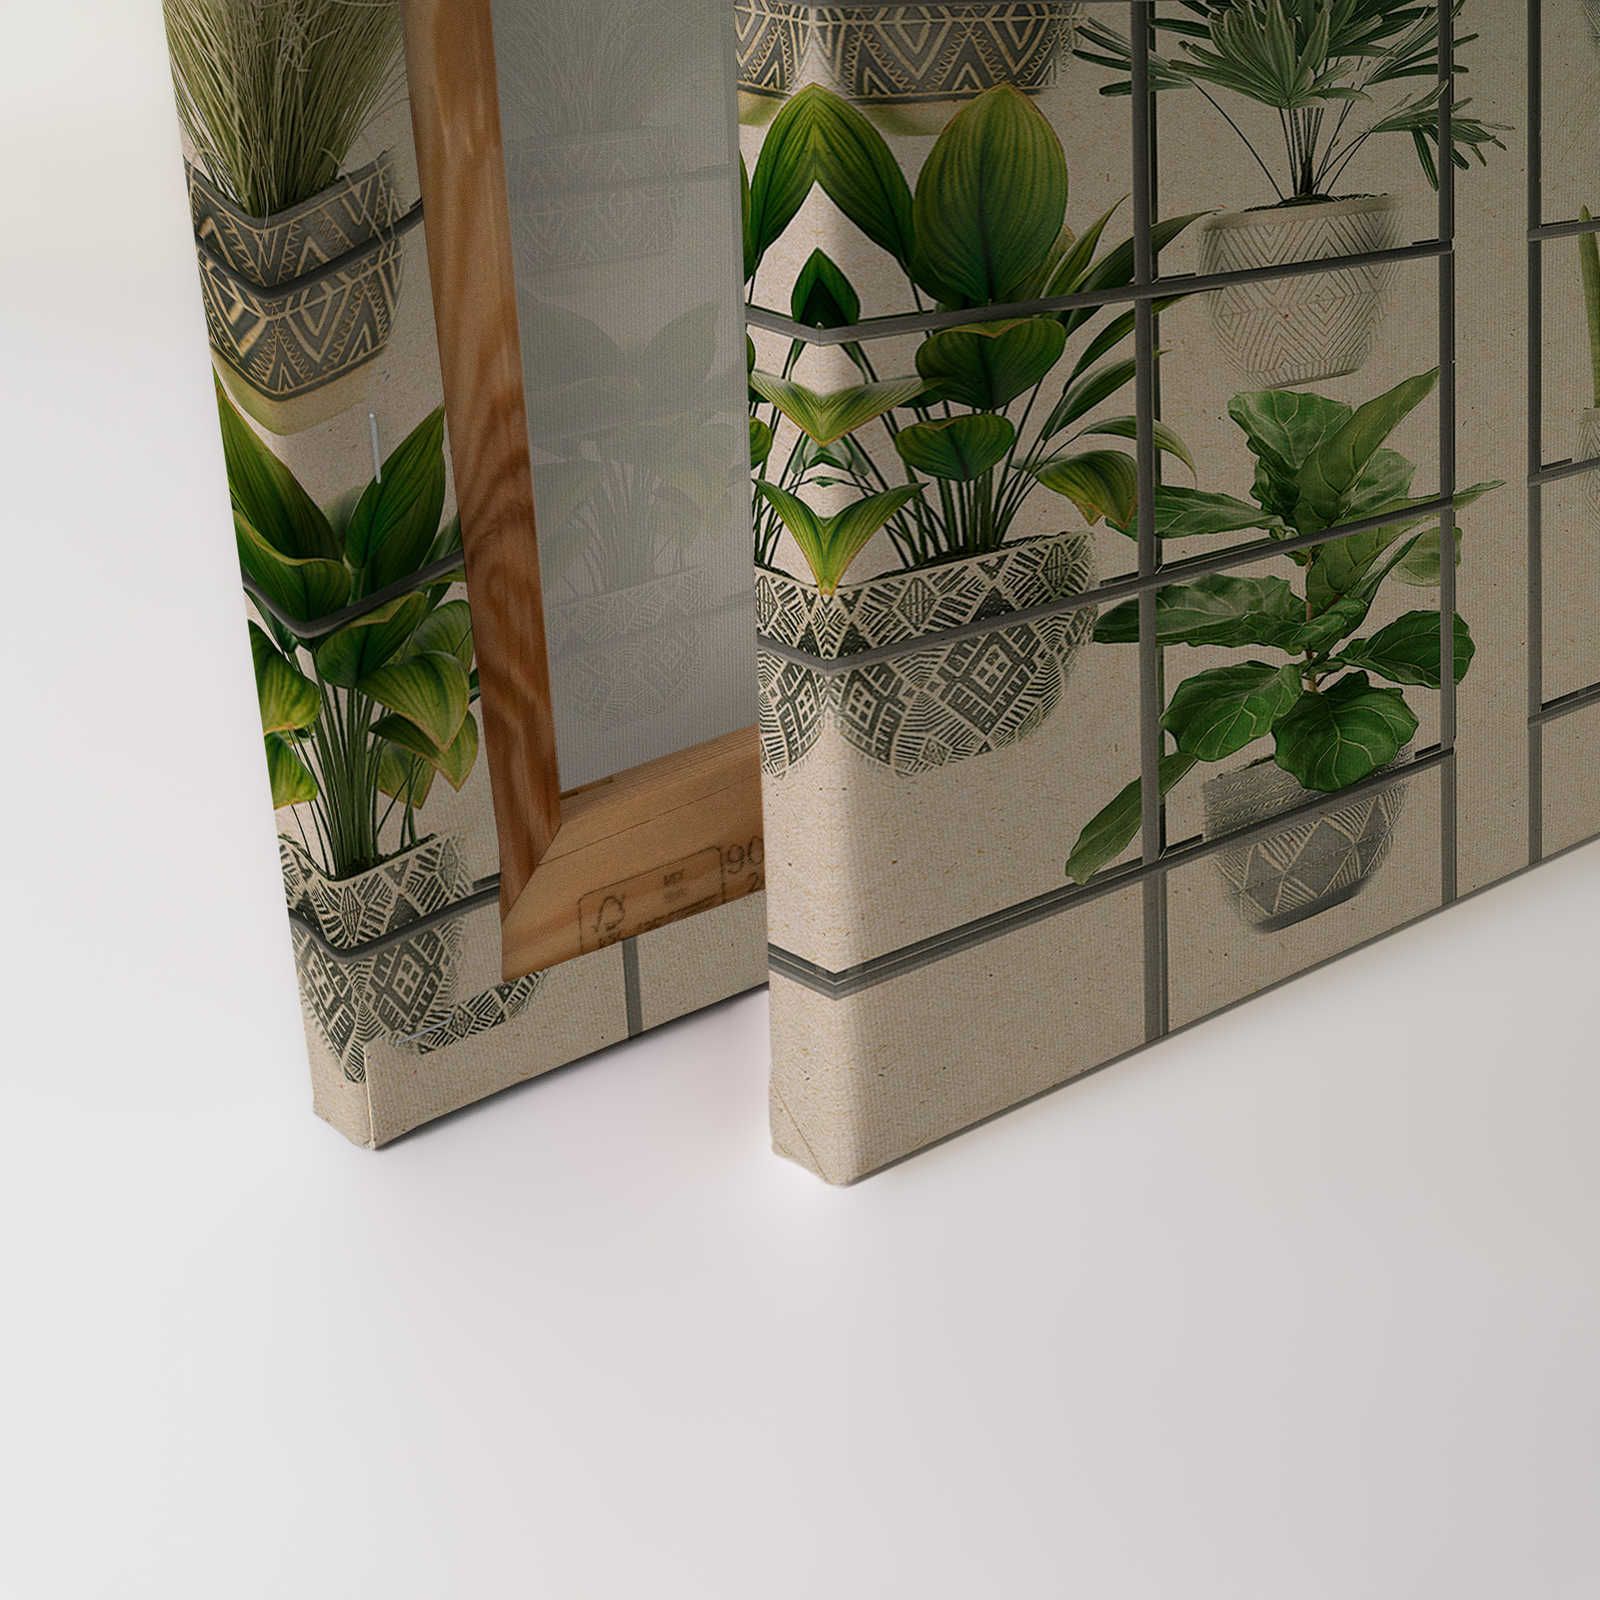             Plant Shop 2 - Tableau de plantes moderne en toile vert & gris - 1,20 m x 0,80 m
        